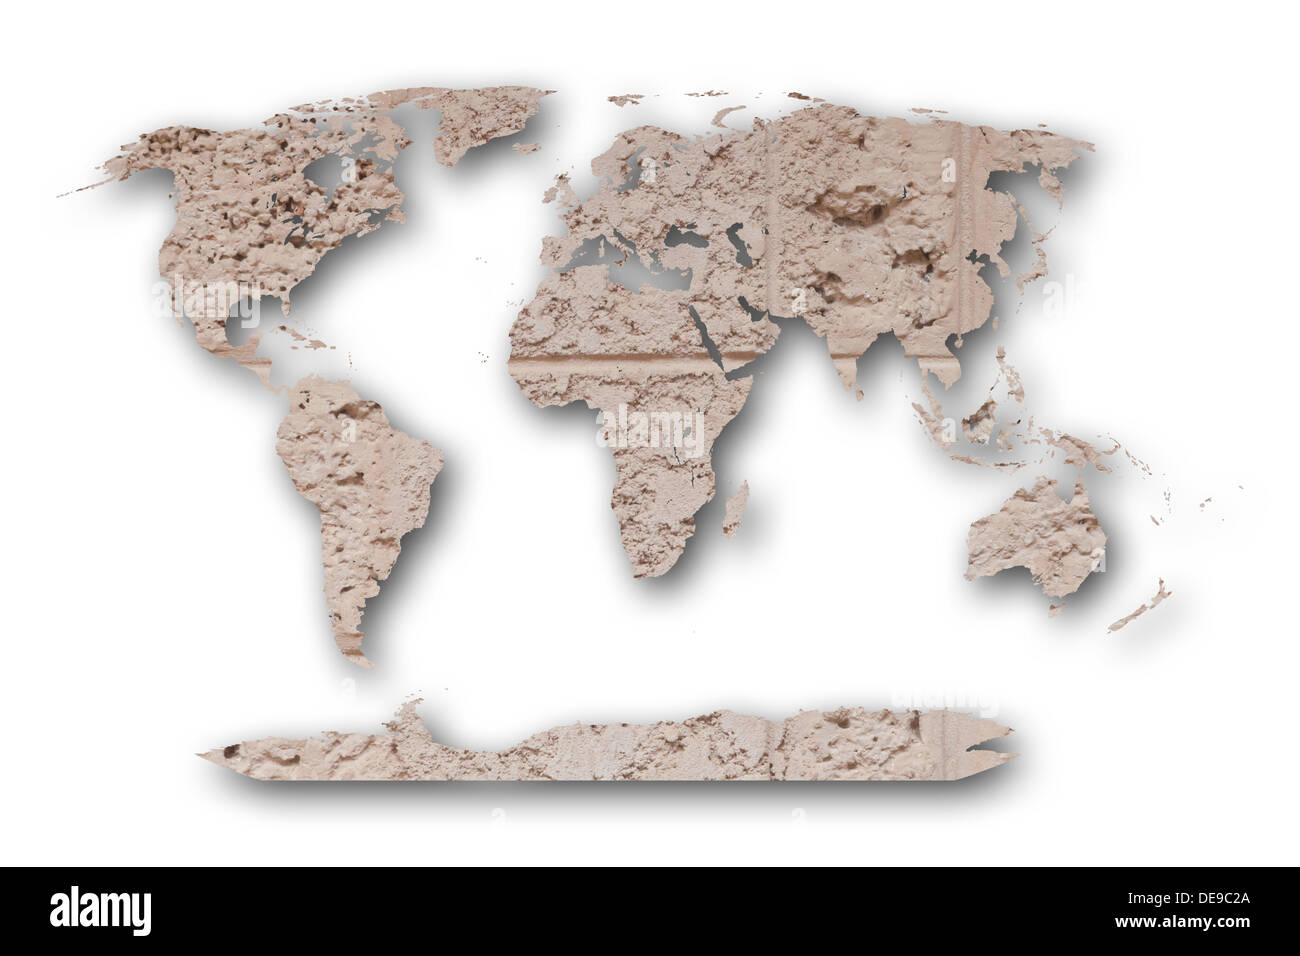 Architecture antique art toile fond fond beau bloc brique brown building carte du monde carte du monde planète blanche global art Banque D'Images